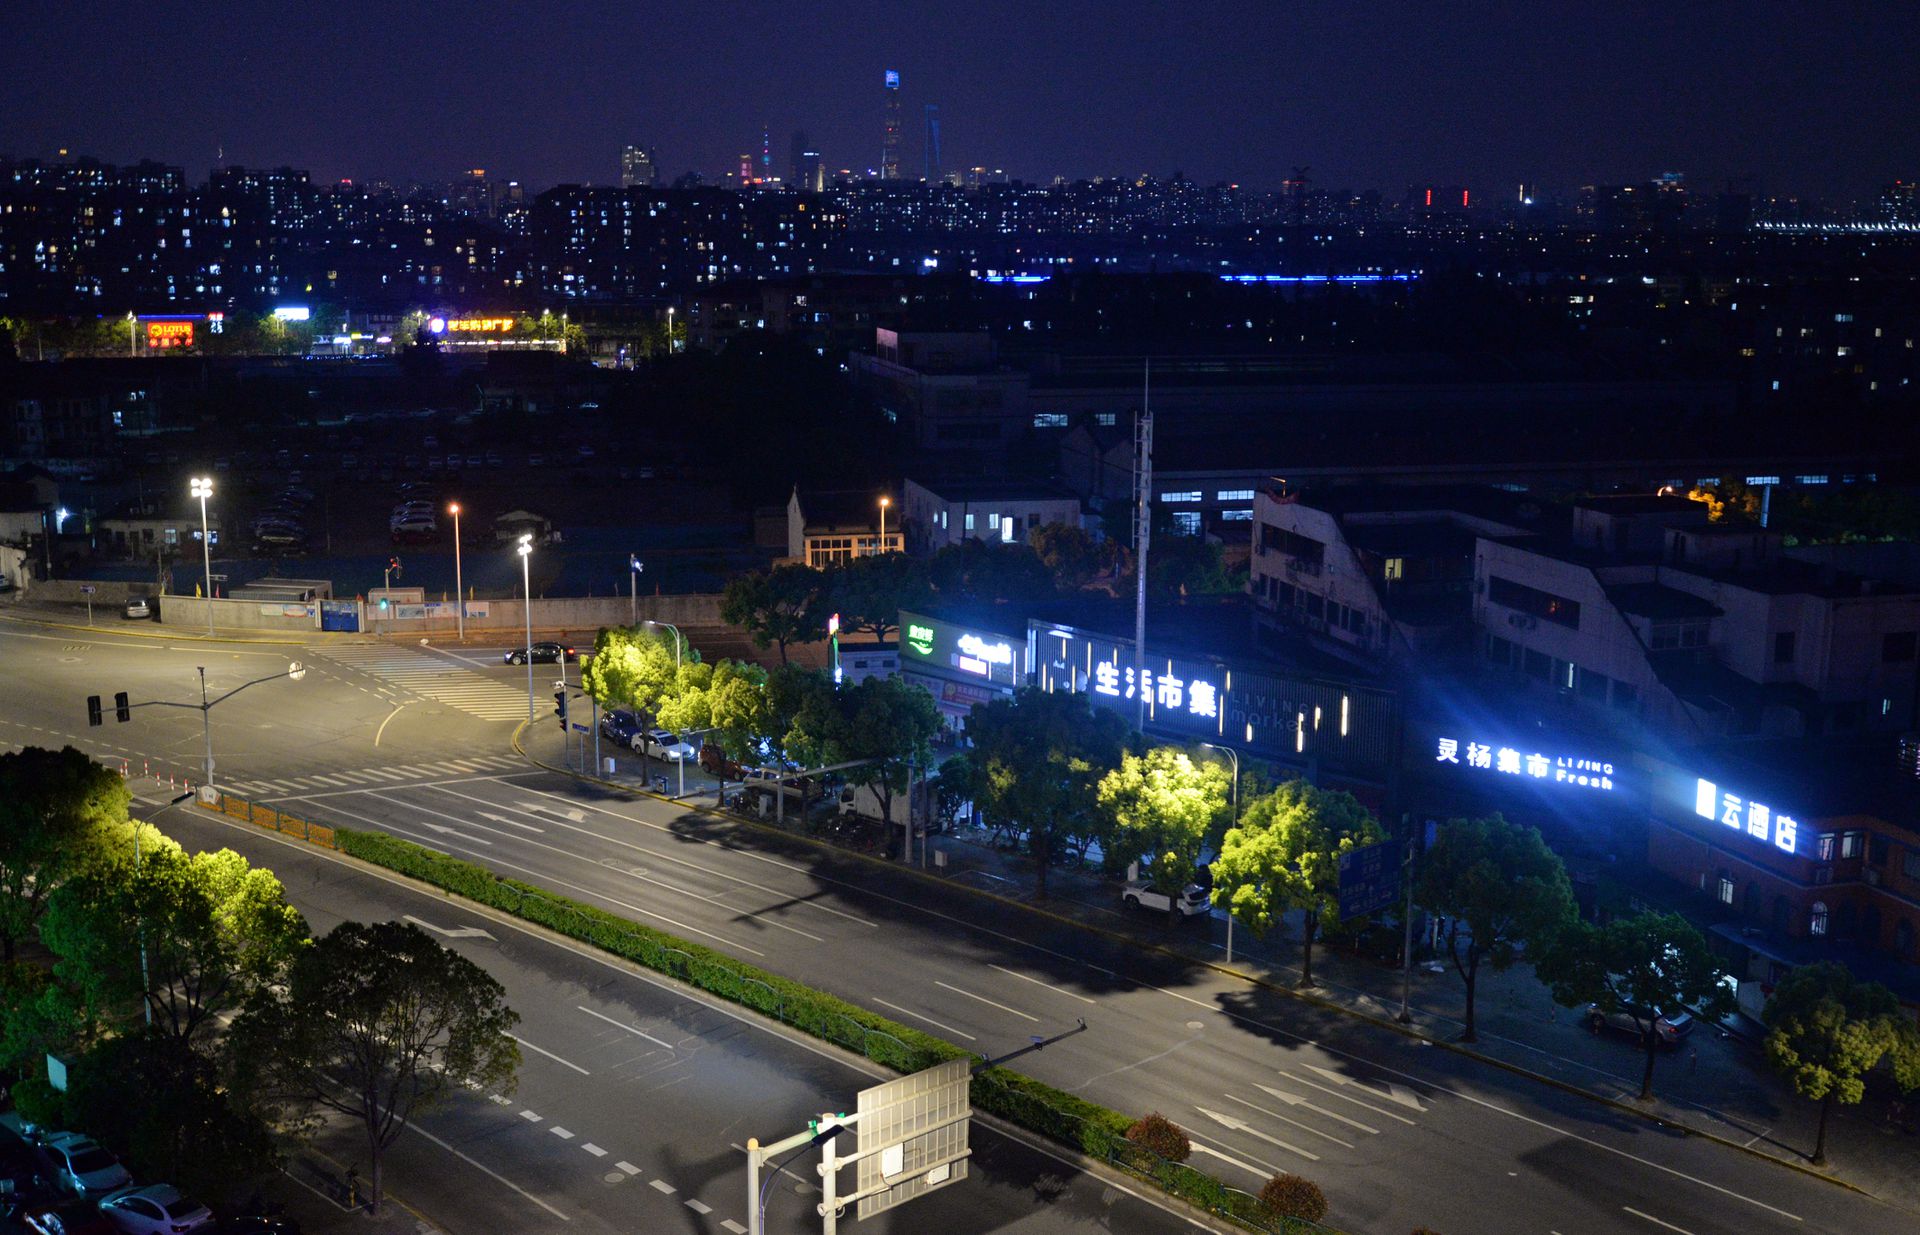 汽車晶片大廠配送中心由上海遷至新加坡